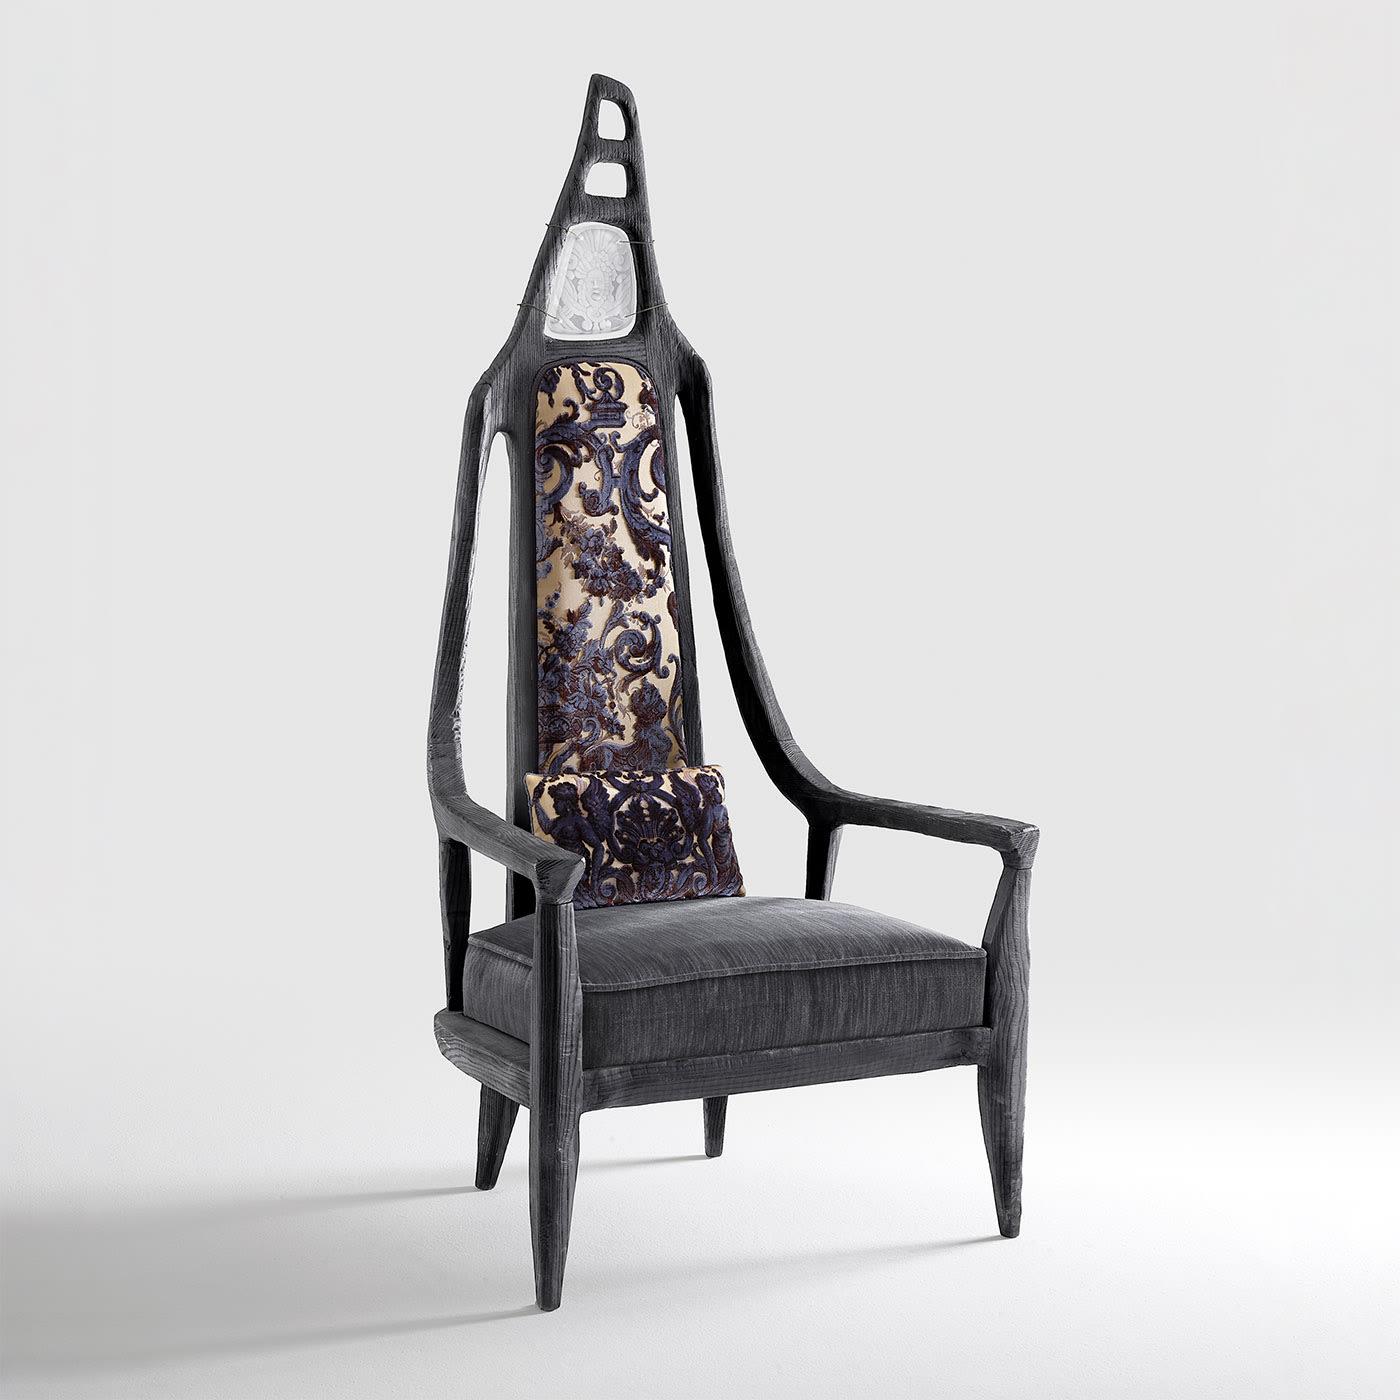 La chaise Cariega - ou trône - a été imaginée comme un lieu de méditation et de catharsis pour se libérer du chaos de la vie quotidienne. Les sièges sont construits et déconstruits en chêne fossile durmast, puis traités selon la technique japonaise